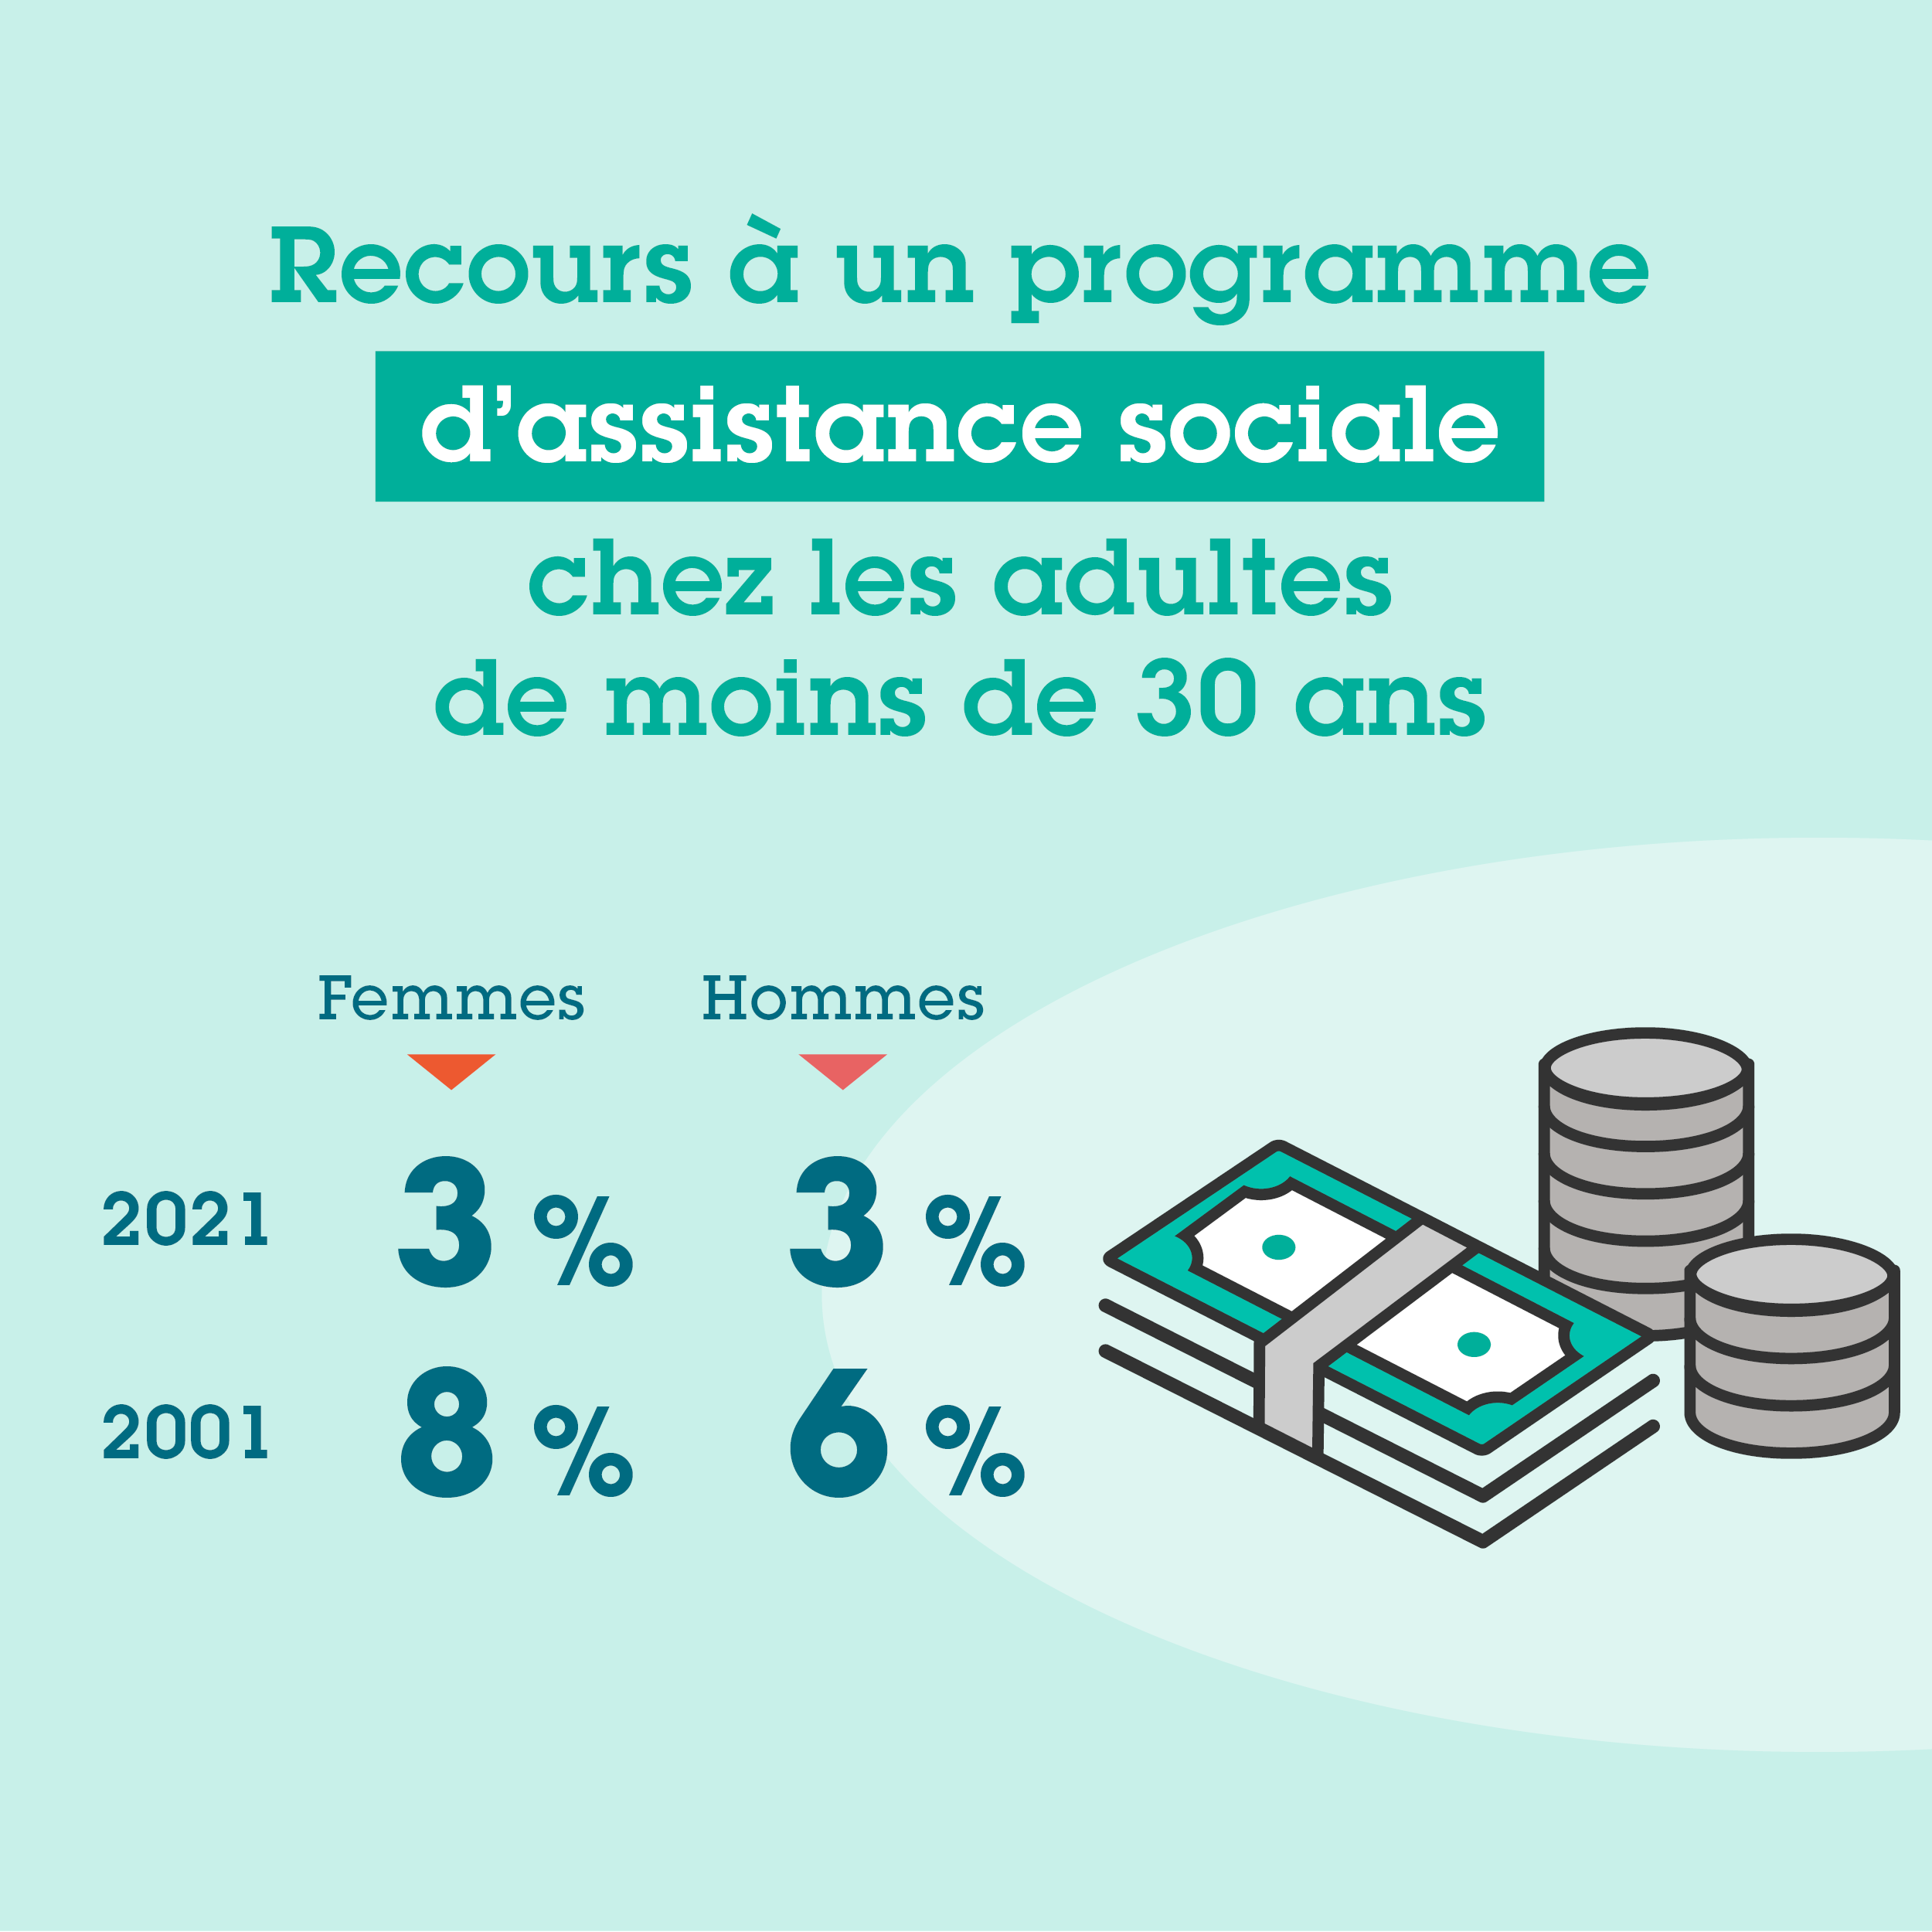 Recours à un programme d’assistance sociale chez les adultes de moins de 30 ans. 2021 : 3 % des femmes et 3 % des hommes; 2001 : 8 % des femmes et 6 % des hommes.